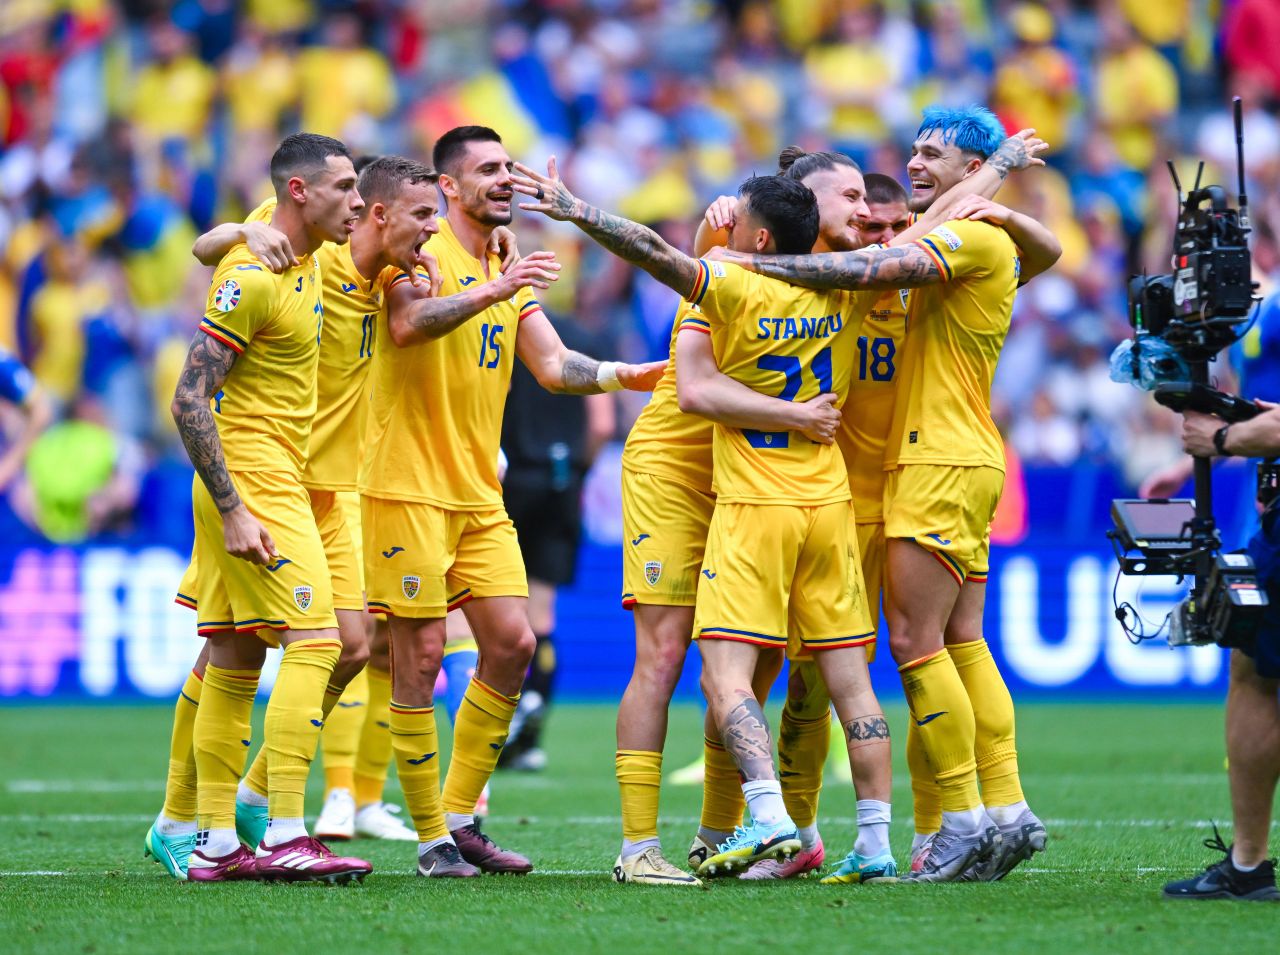 Distrus de presă, apărat de fani: ucrainenii îl vor în poartă pe Lunin și în meciurile următoare_13